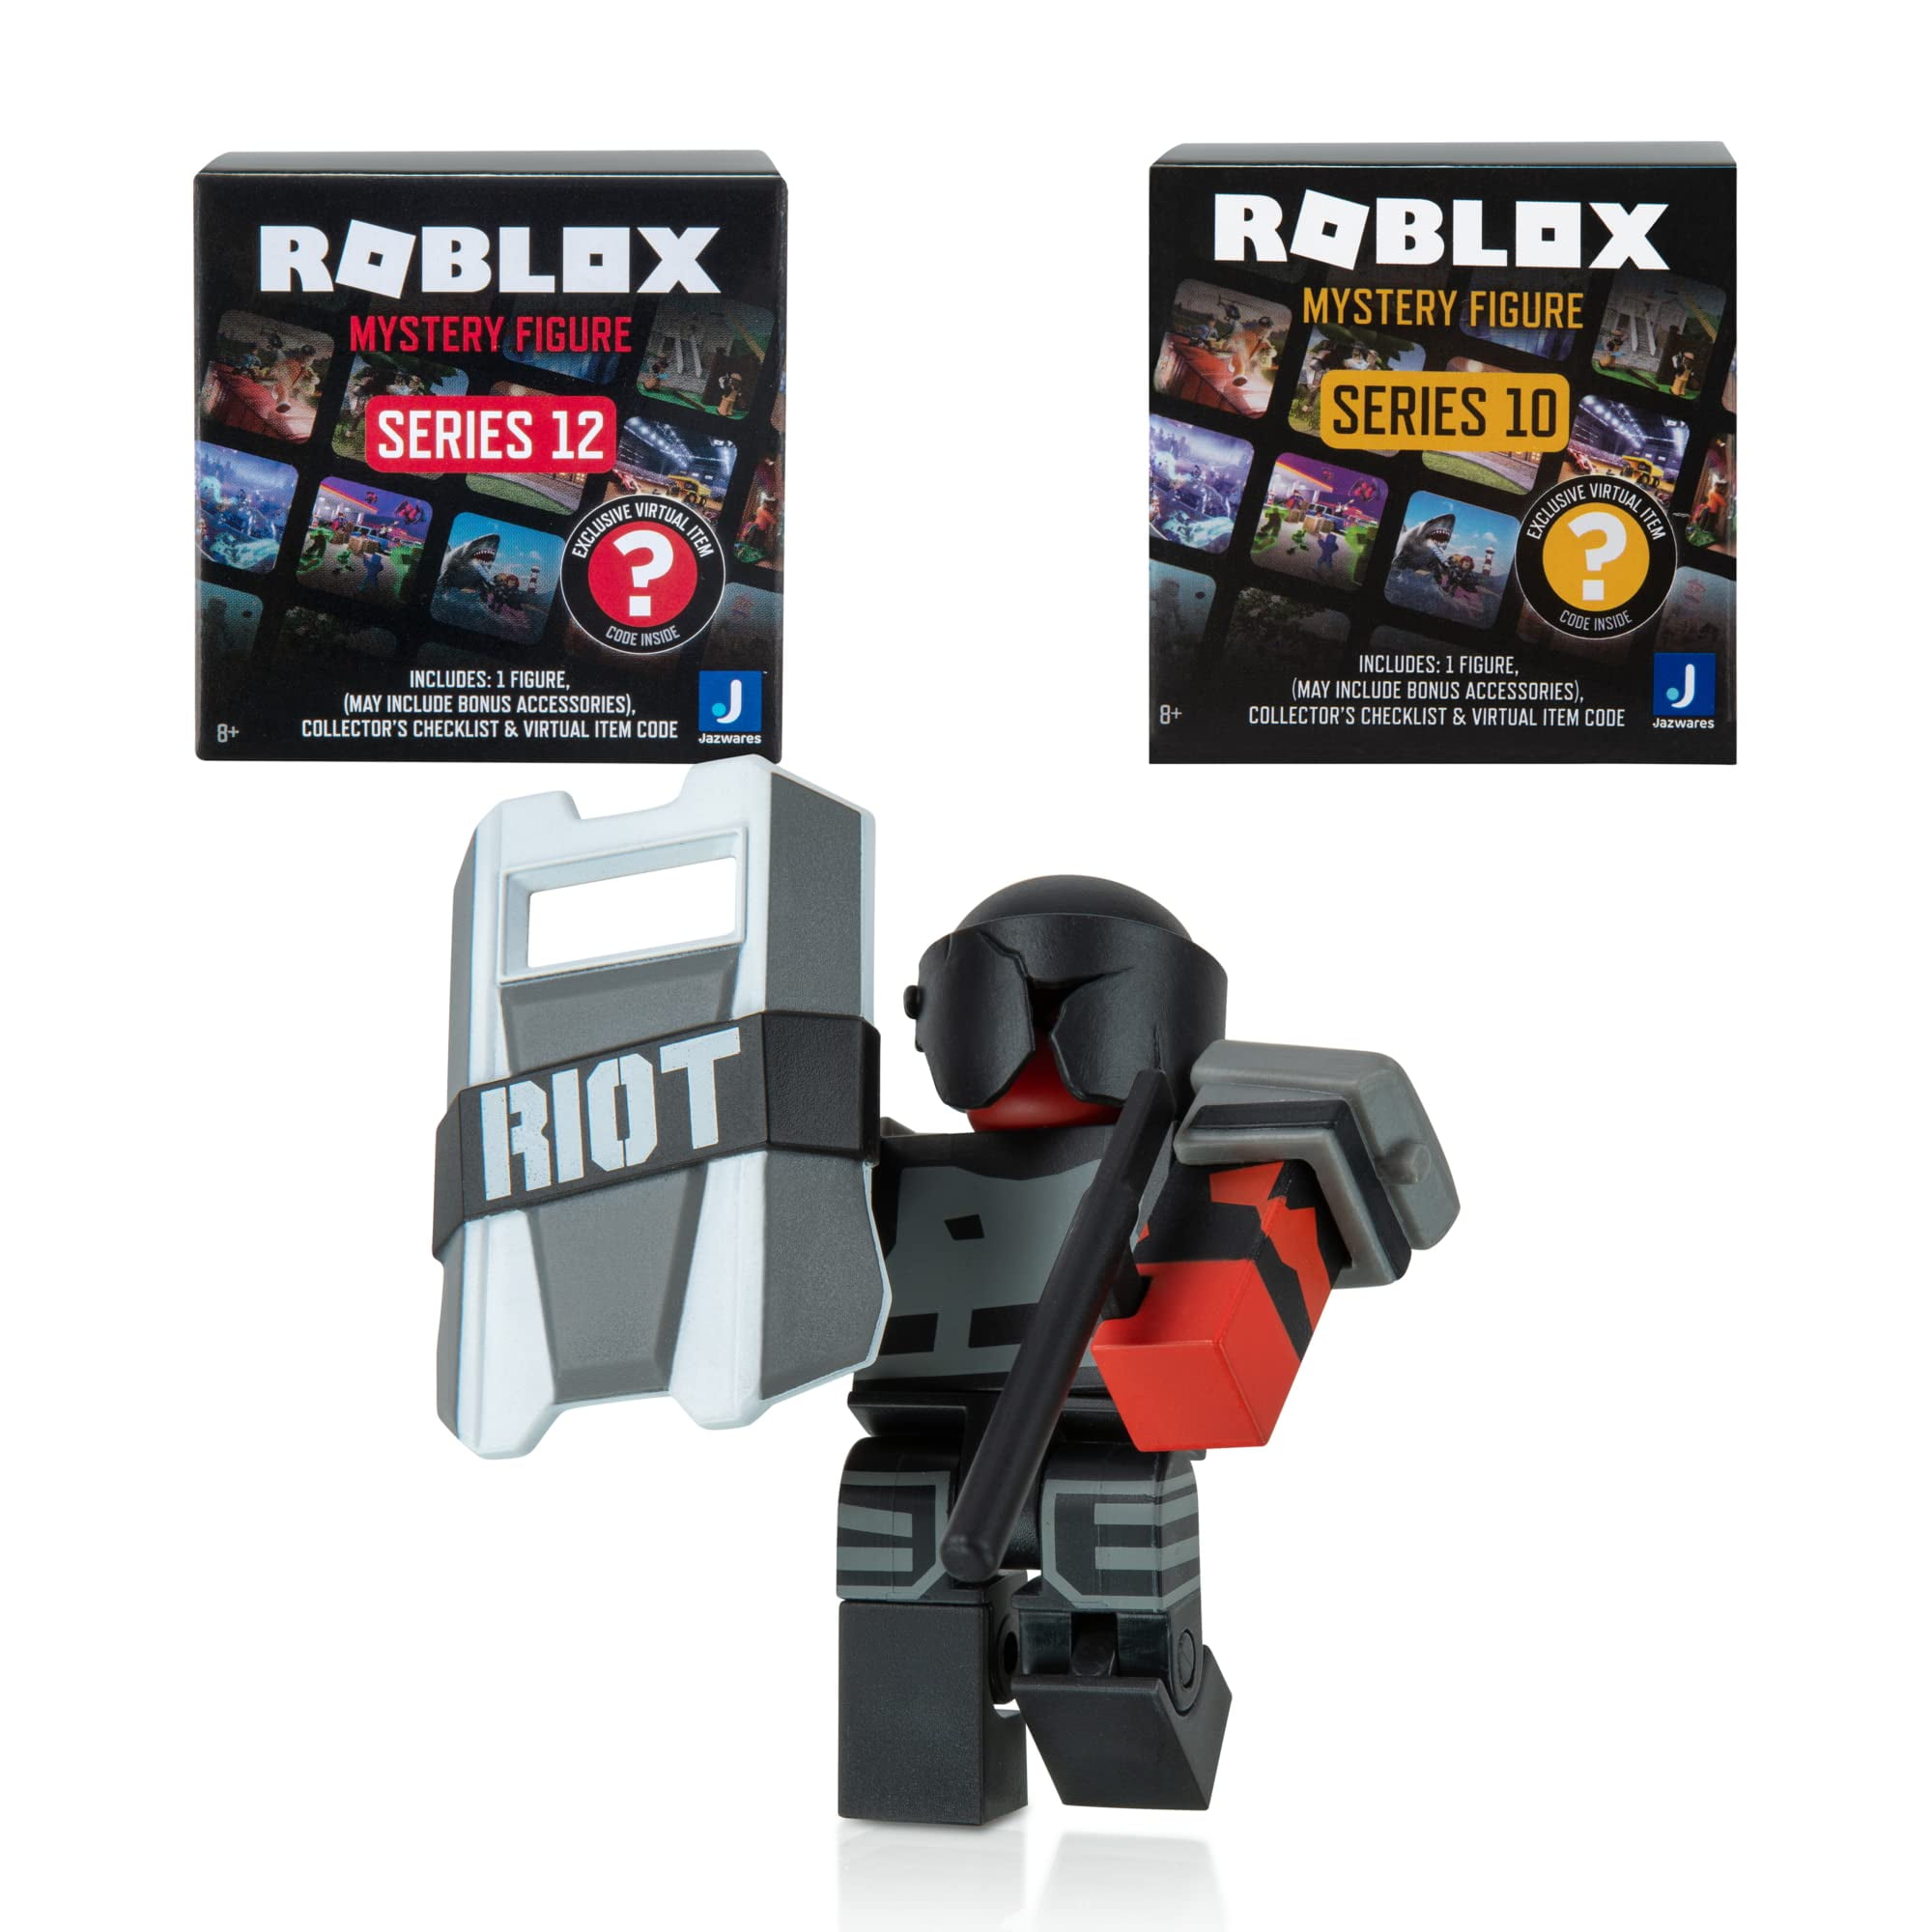 Roblox: Toy Defense Codes